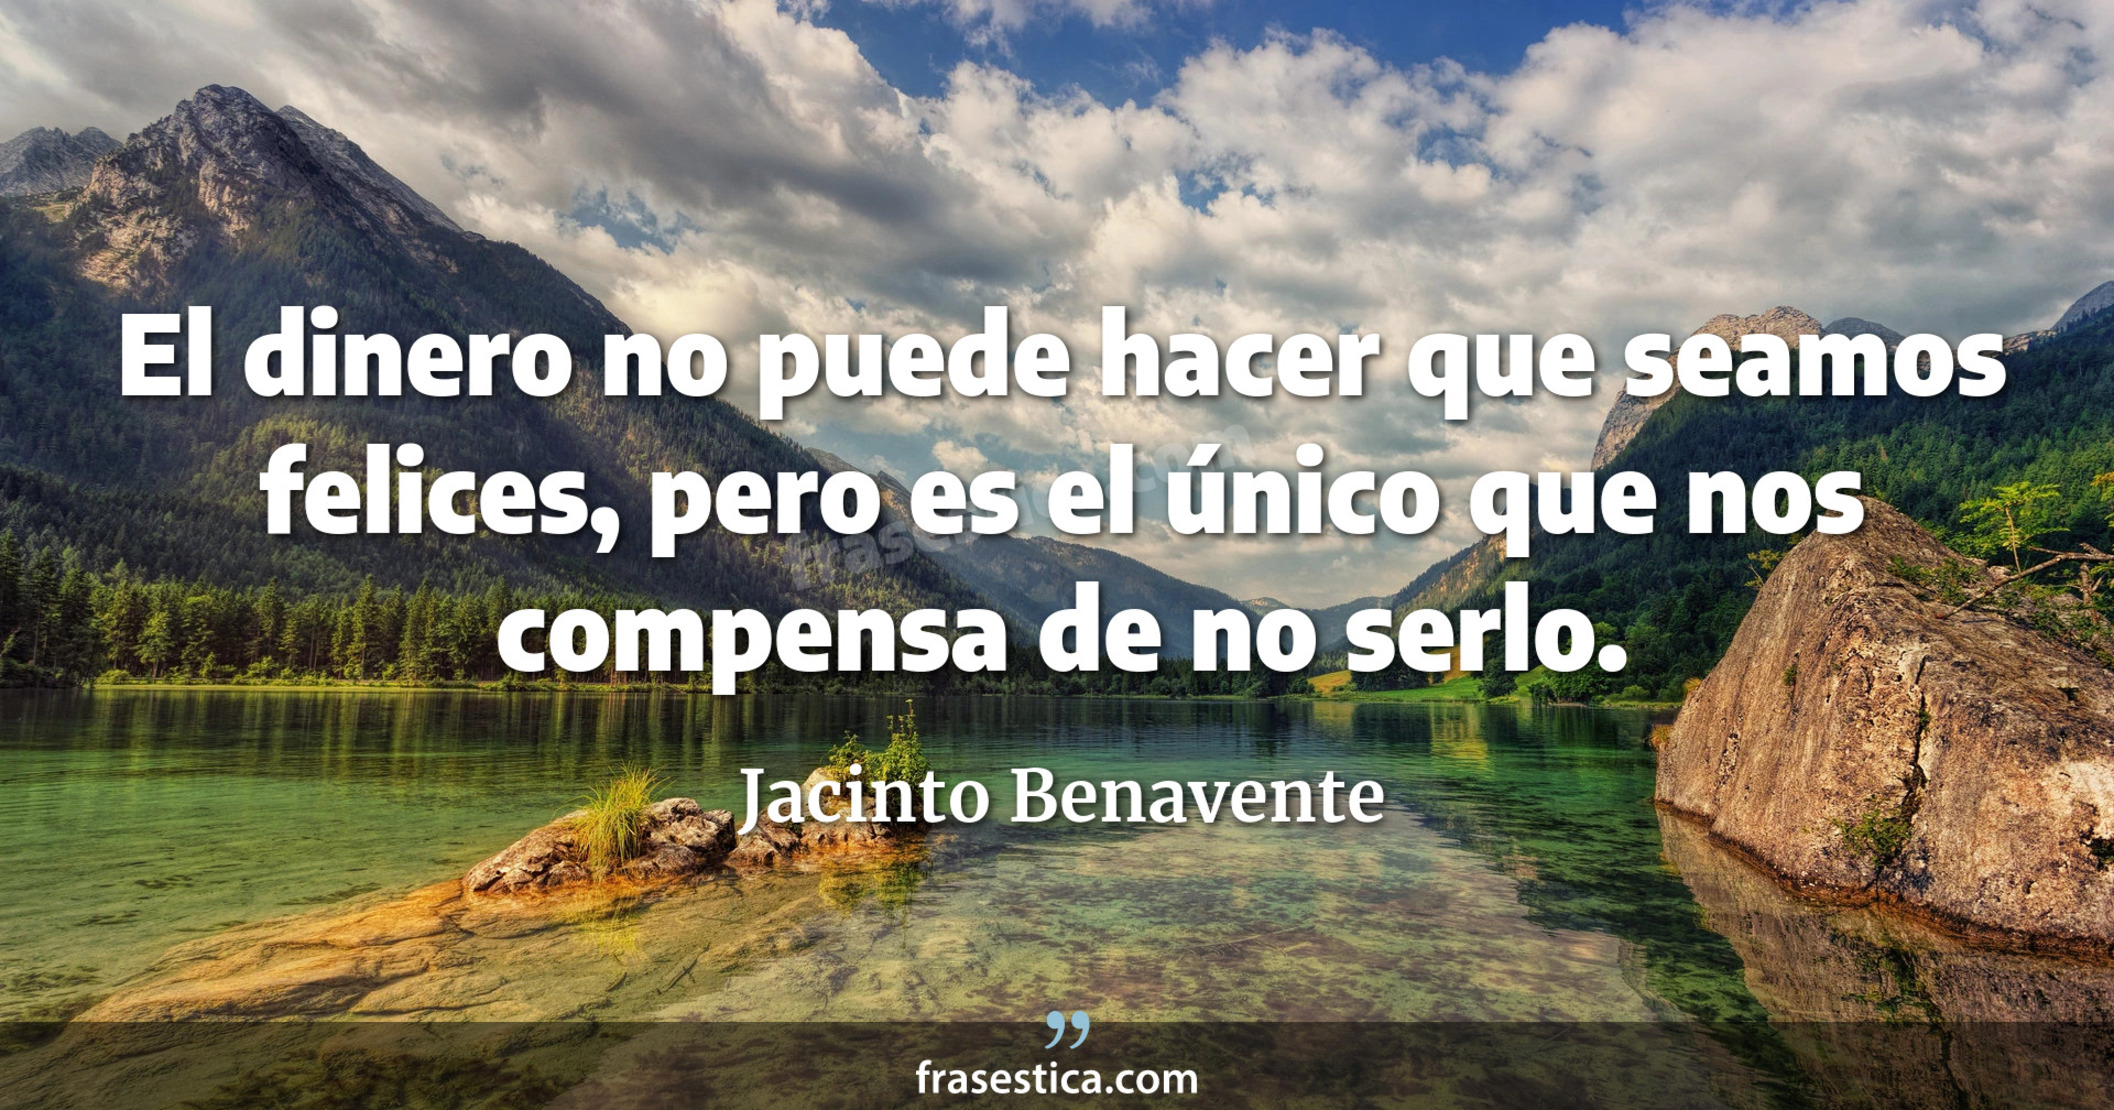 El dinero no puede hacer que seamos felices, pero es el único que nos compensa de no serlo. - Jacinto Benavente